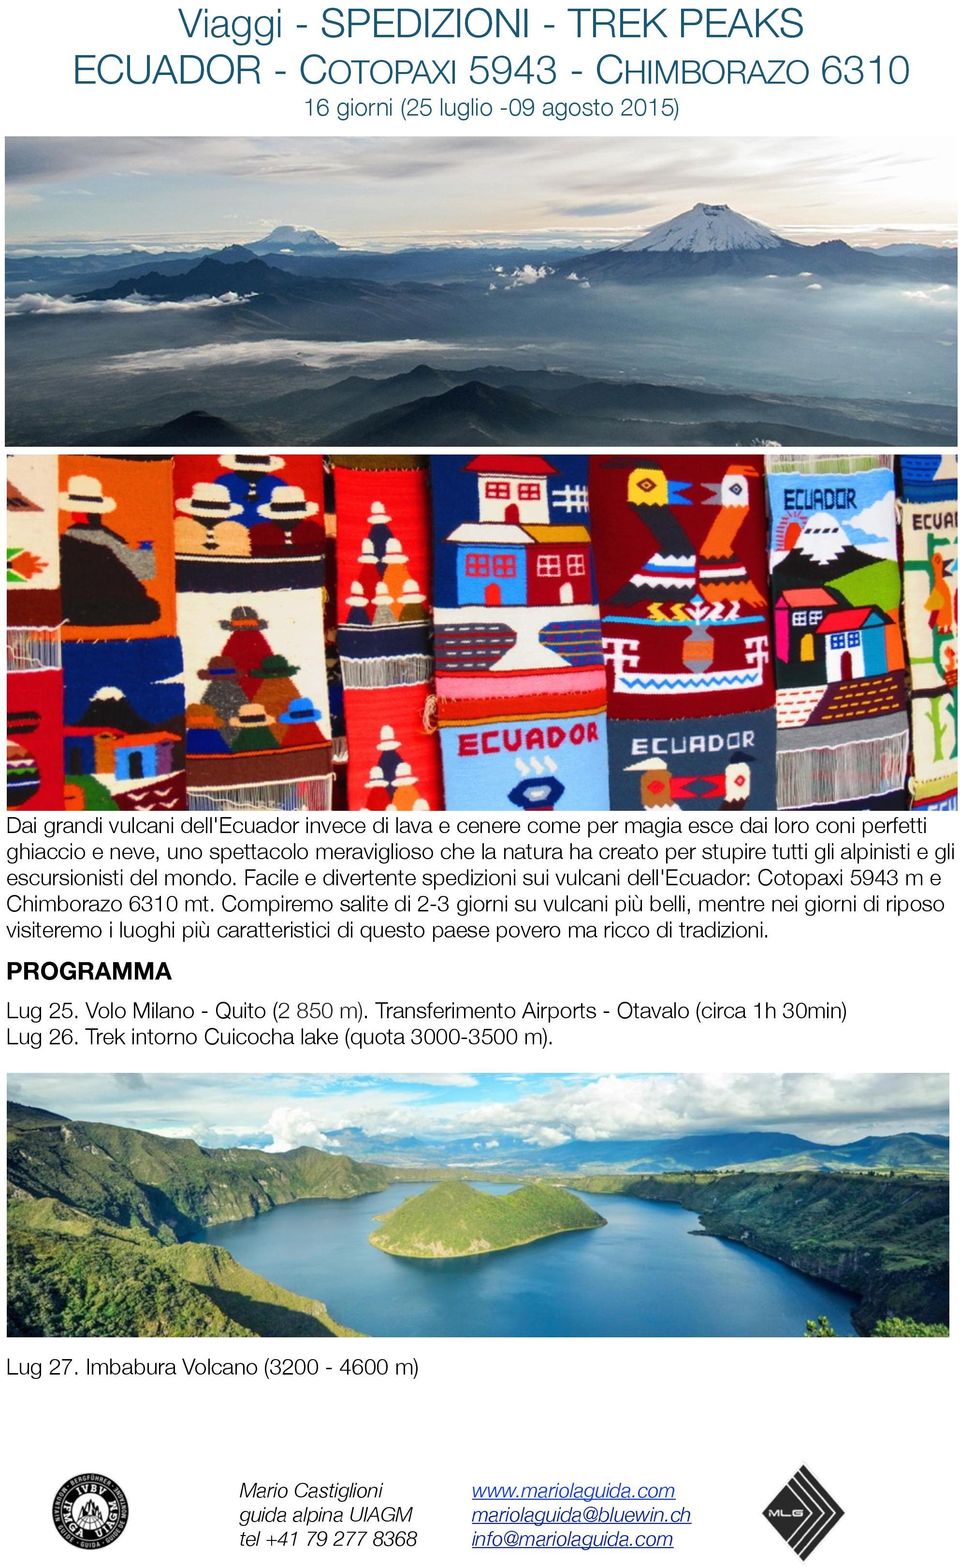 Facile e divertente spedizioni sui vulcani dell'ecuador: Cotopaxi 5943 m e Chimborazo 6310 mt.